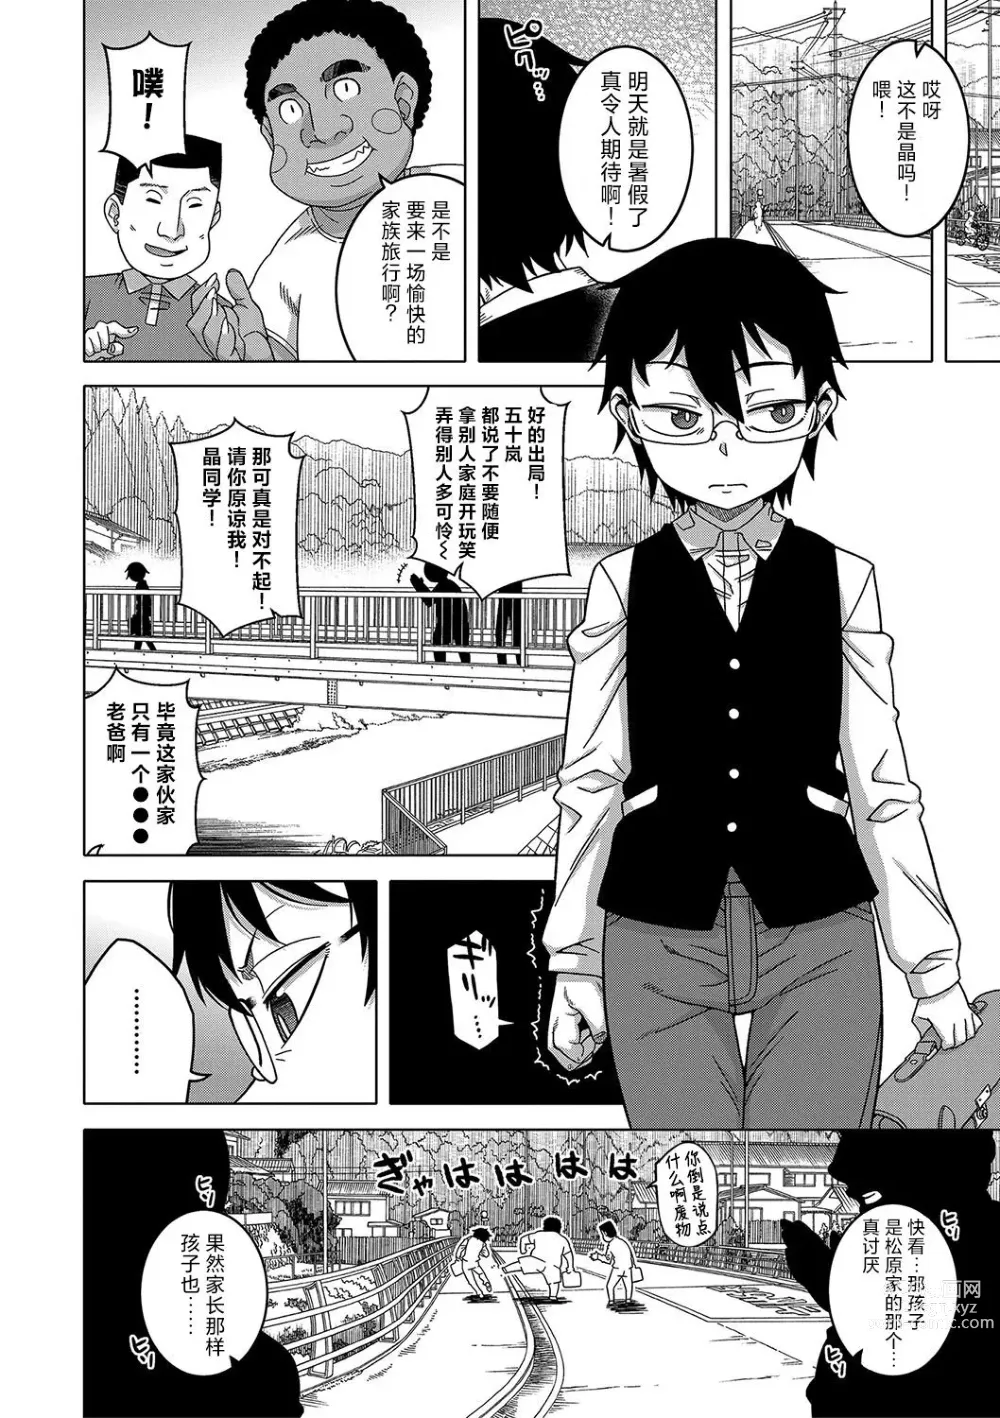 Page 6 of manga Kyouso-sama no Tsukurikata